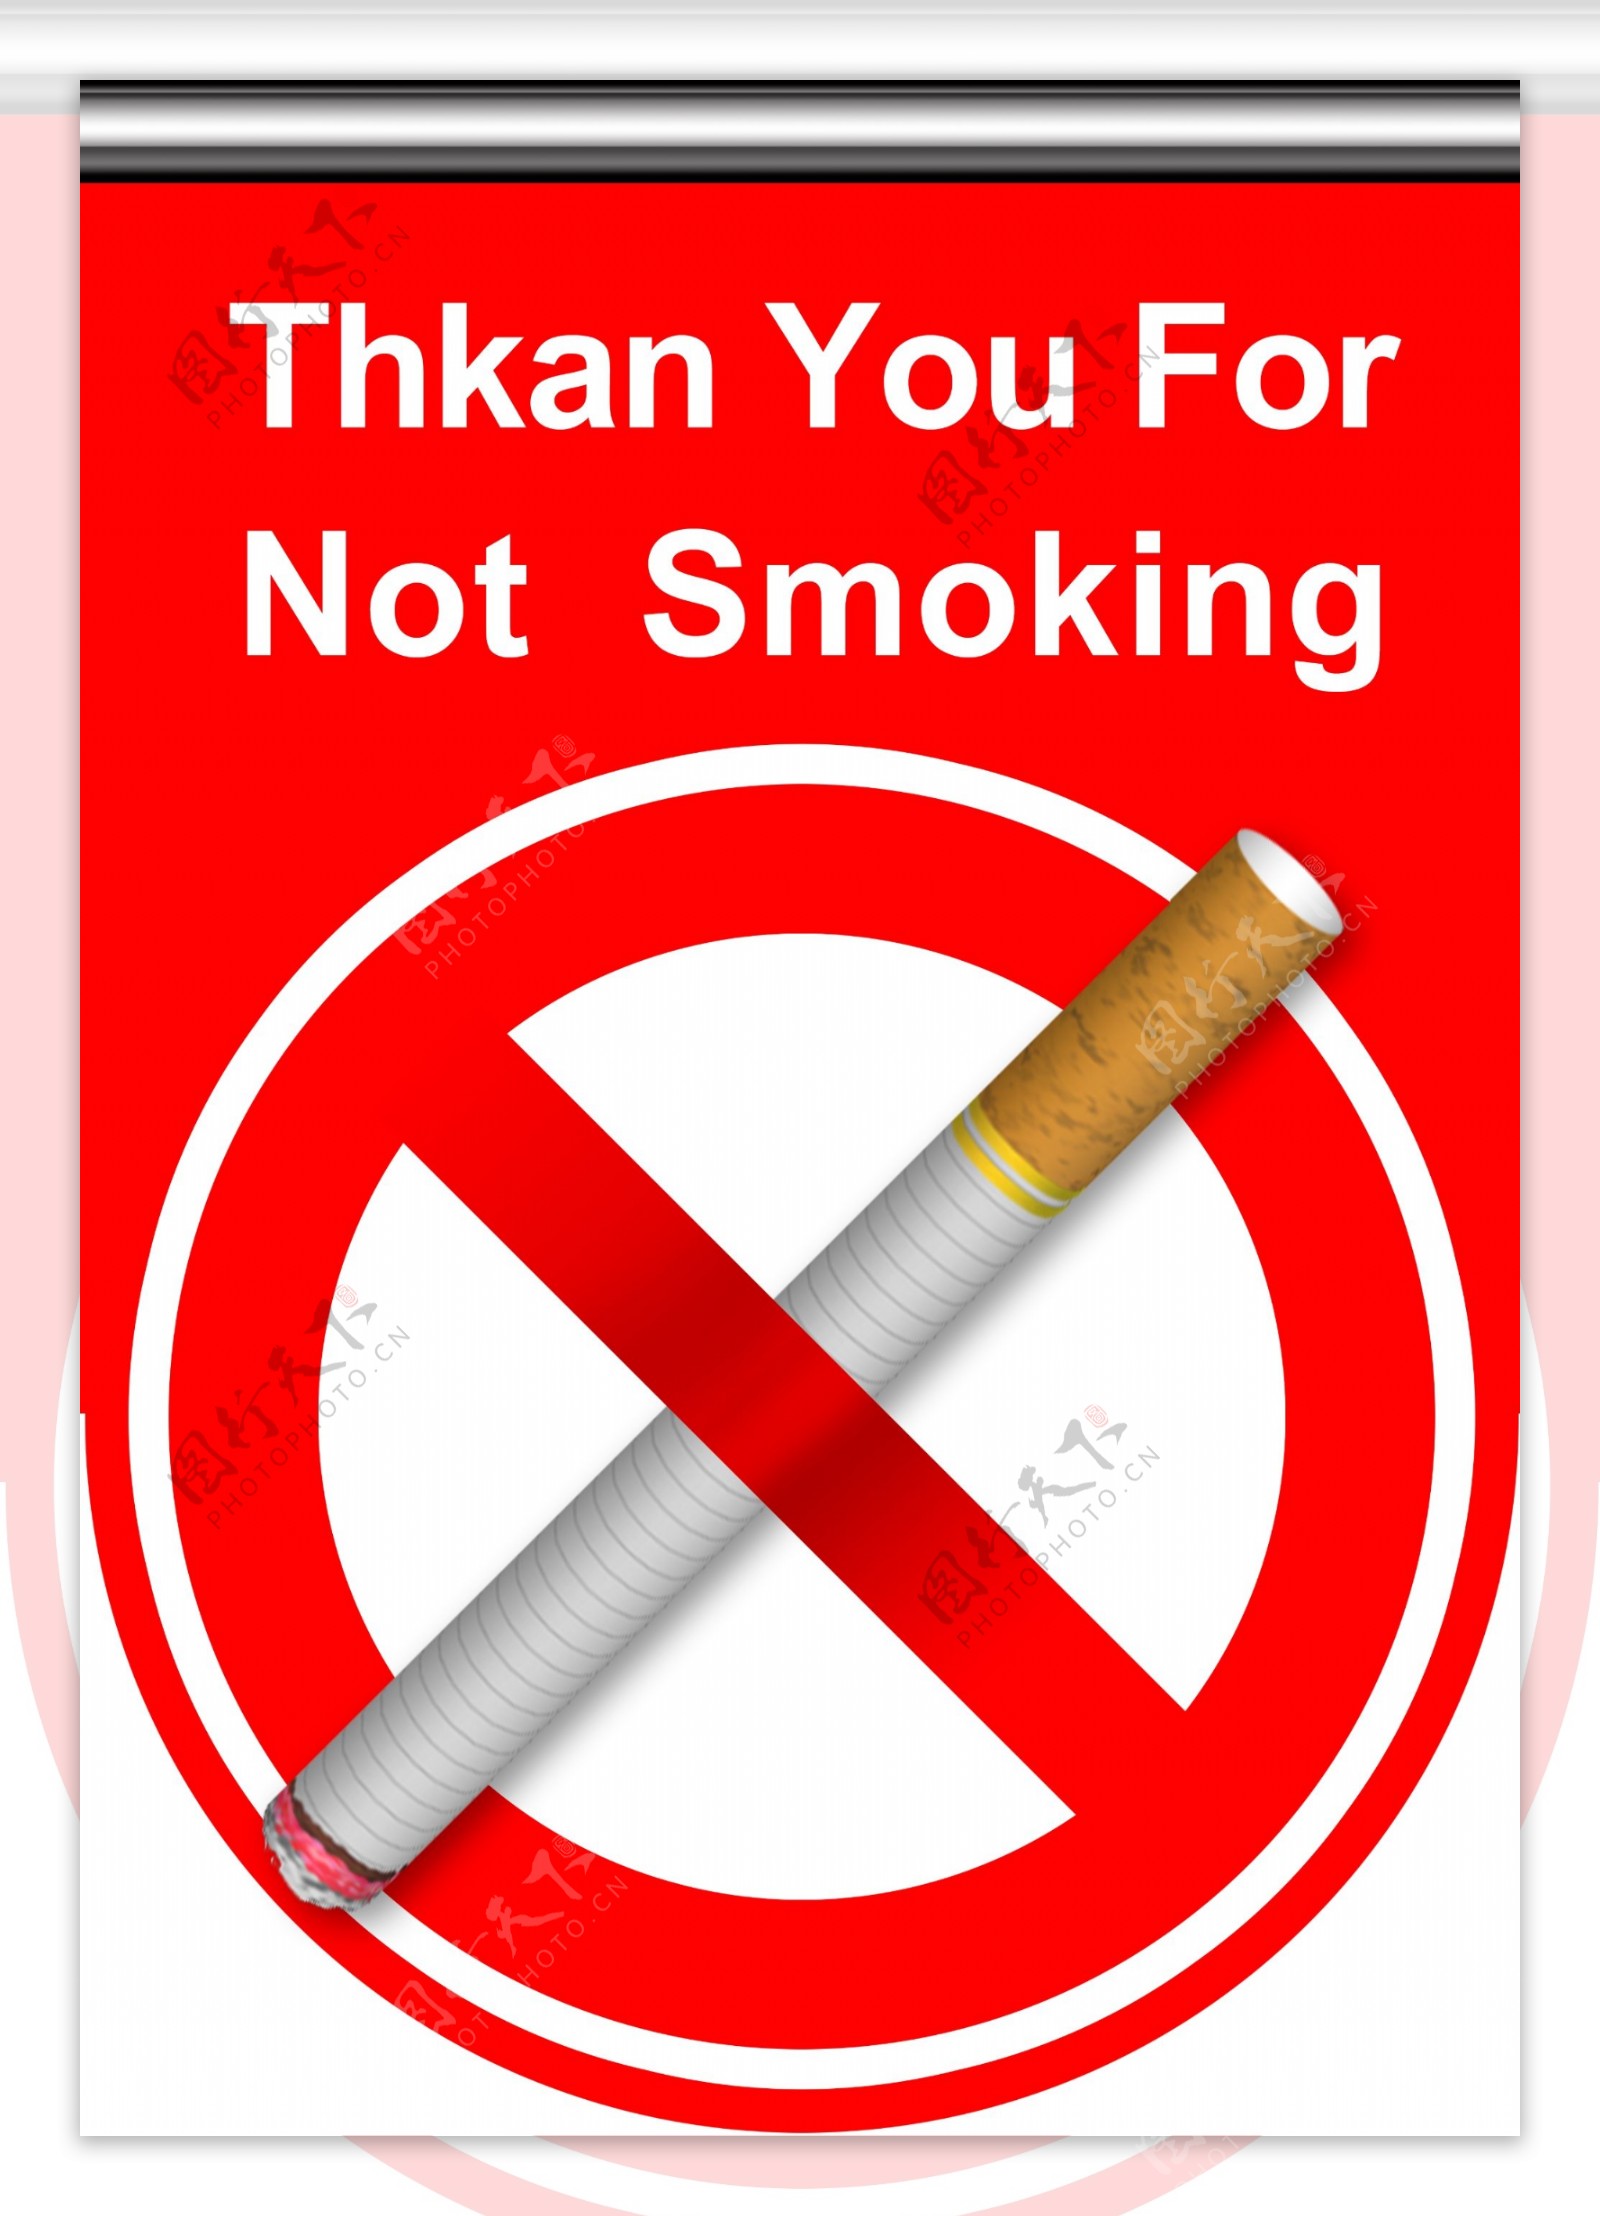 禁止吸烟吊牌图片